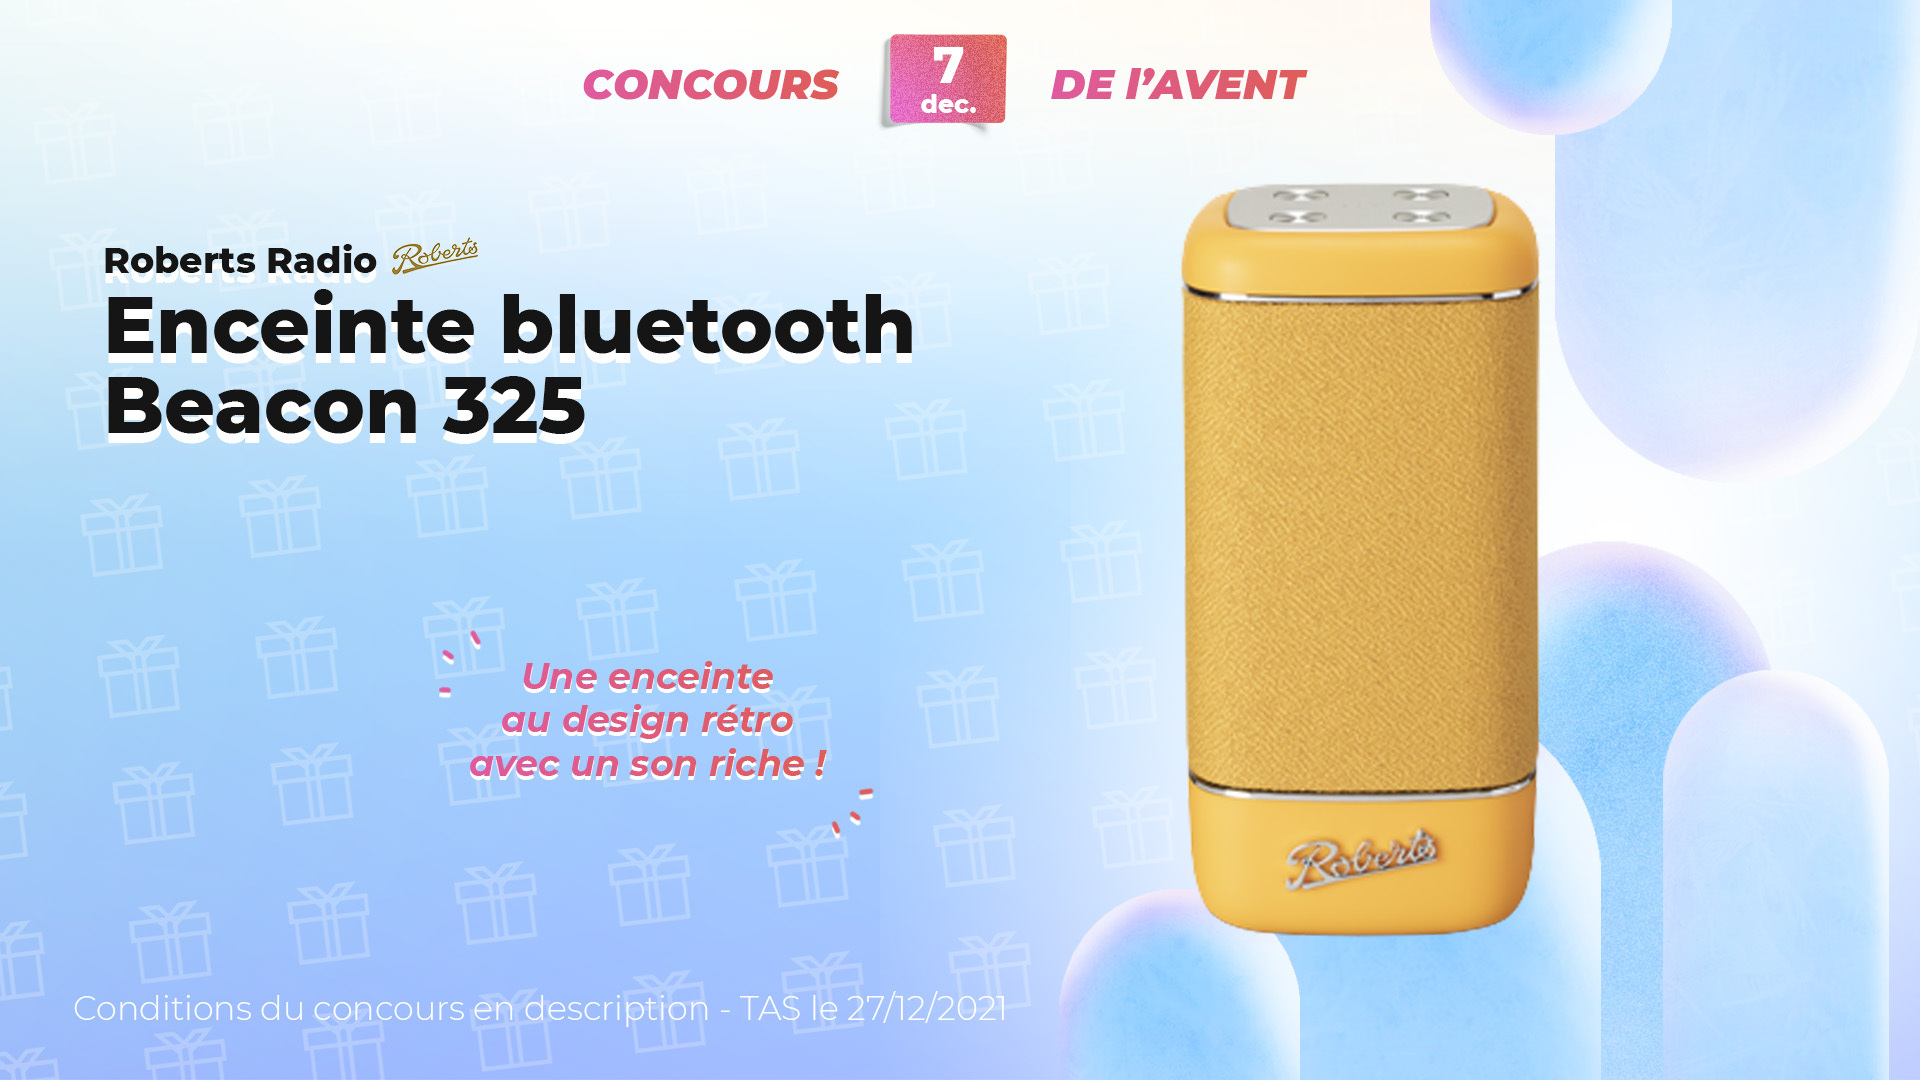 #FrandroidOffreMoi une enceinte Bluetooth pour mettre l’ambiance en soirée